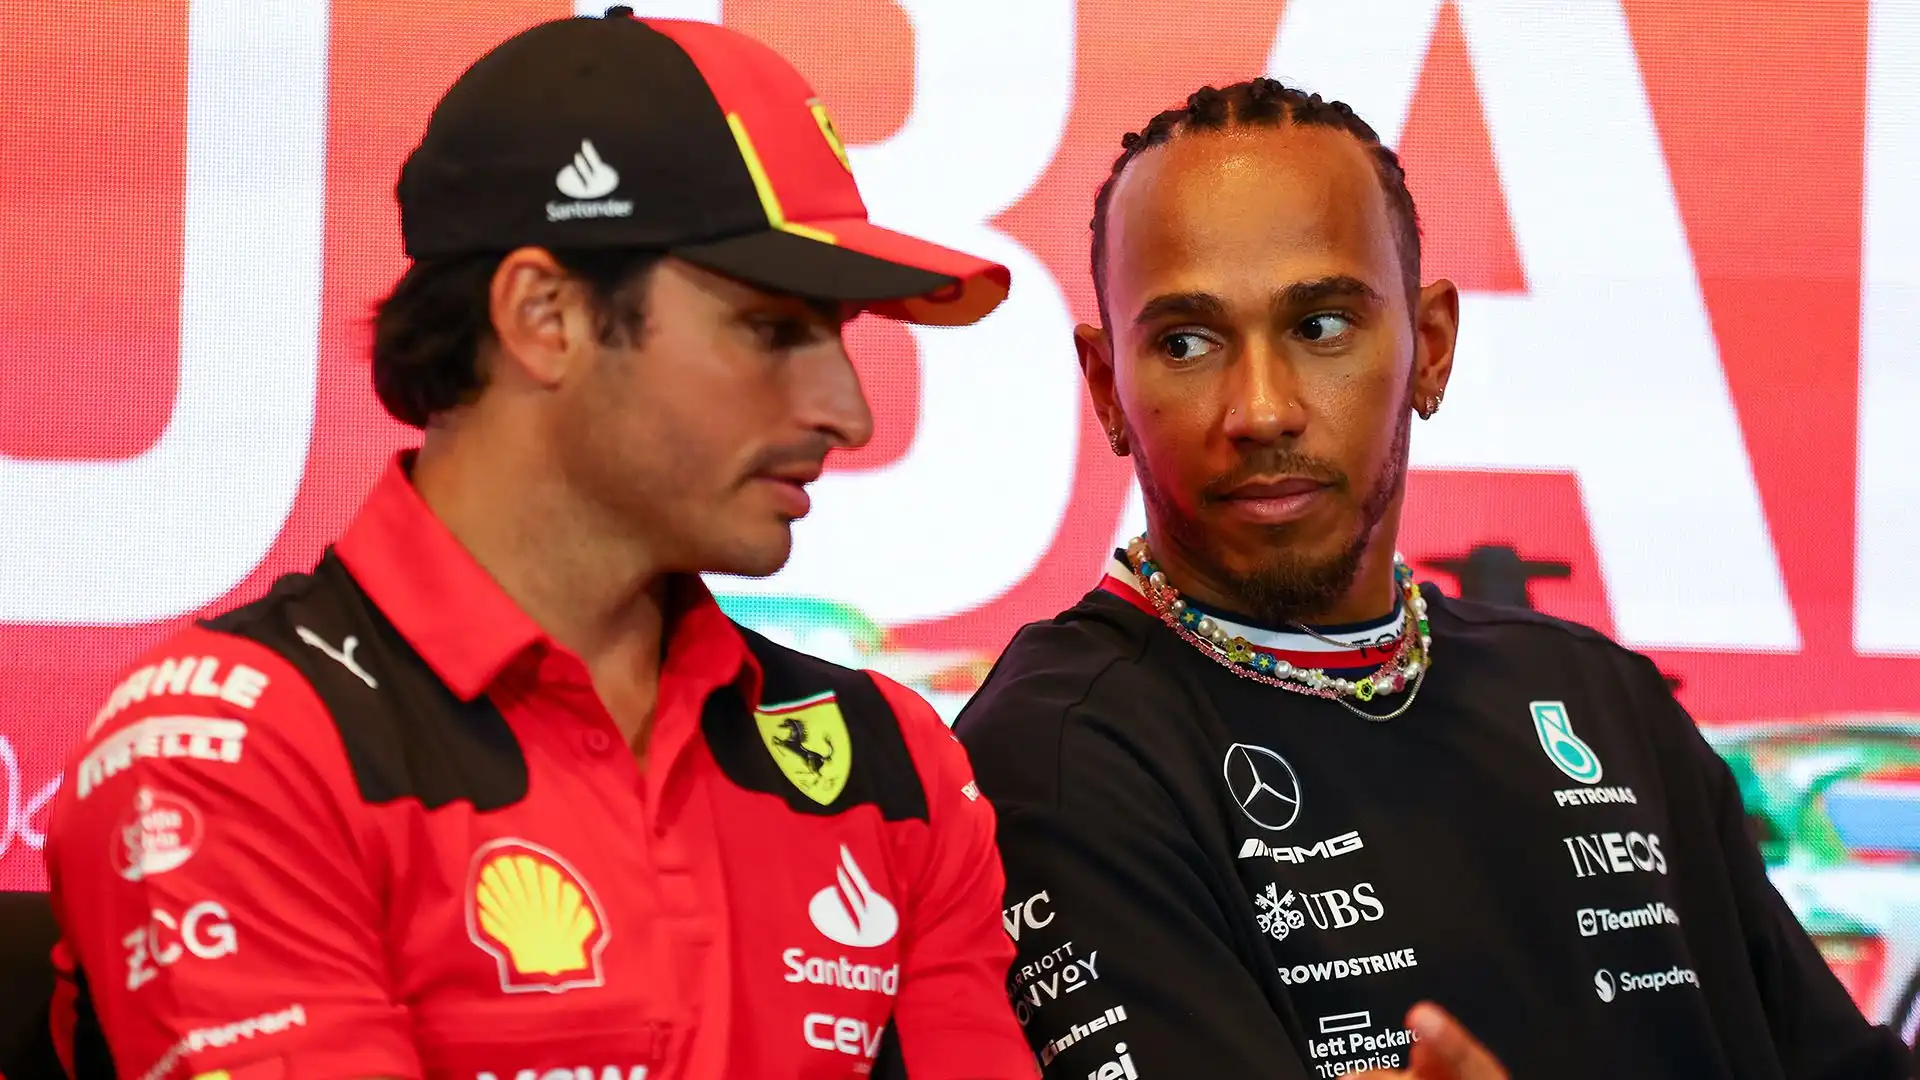 Sainz potrebbe proprio prendere il posto di Hamilton alla Mercedes, oppure di Alonso se lascerà l'Aston Martin